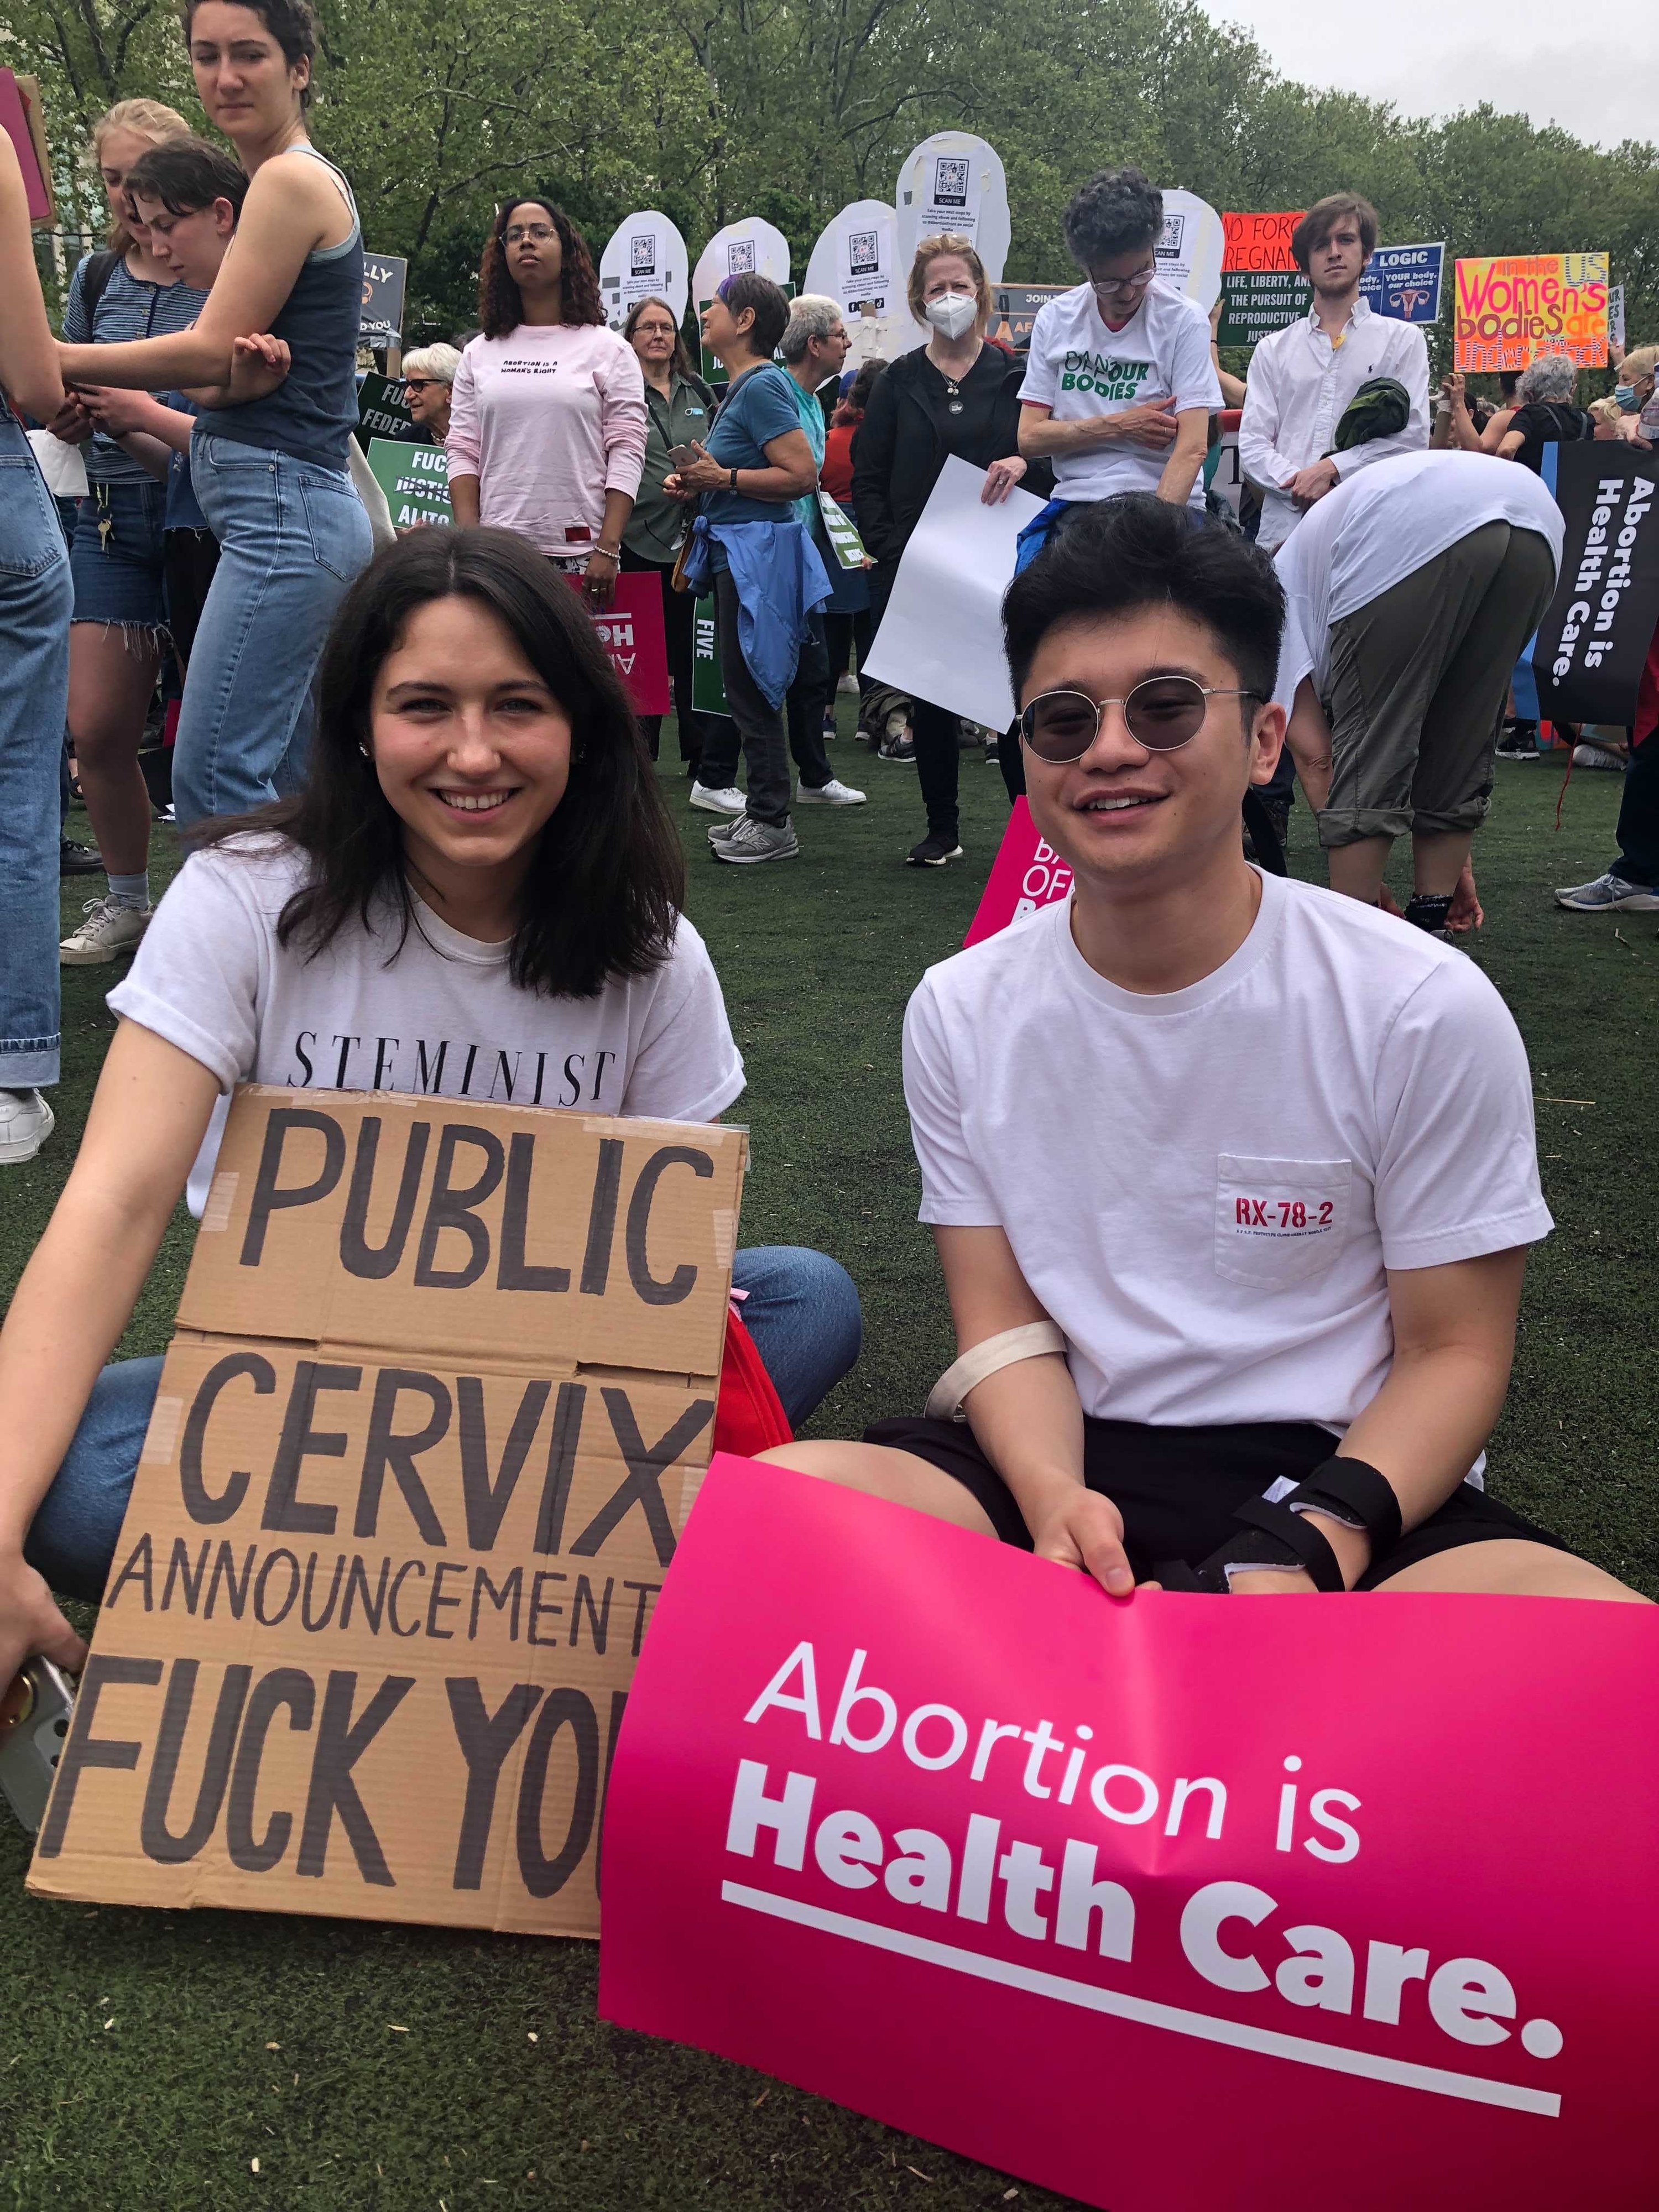 Sign reading &quot;Public cervix announcement: FUCK YOU&quot;